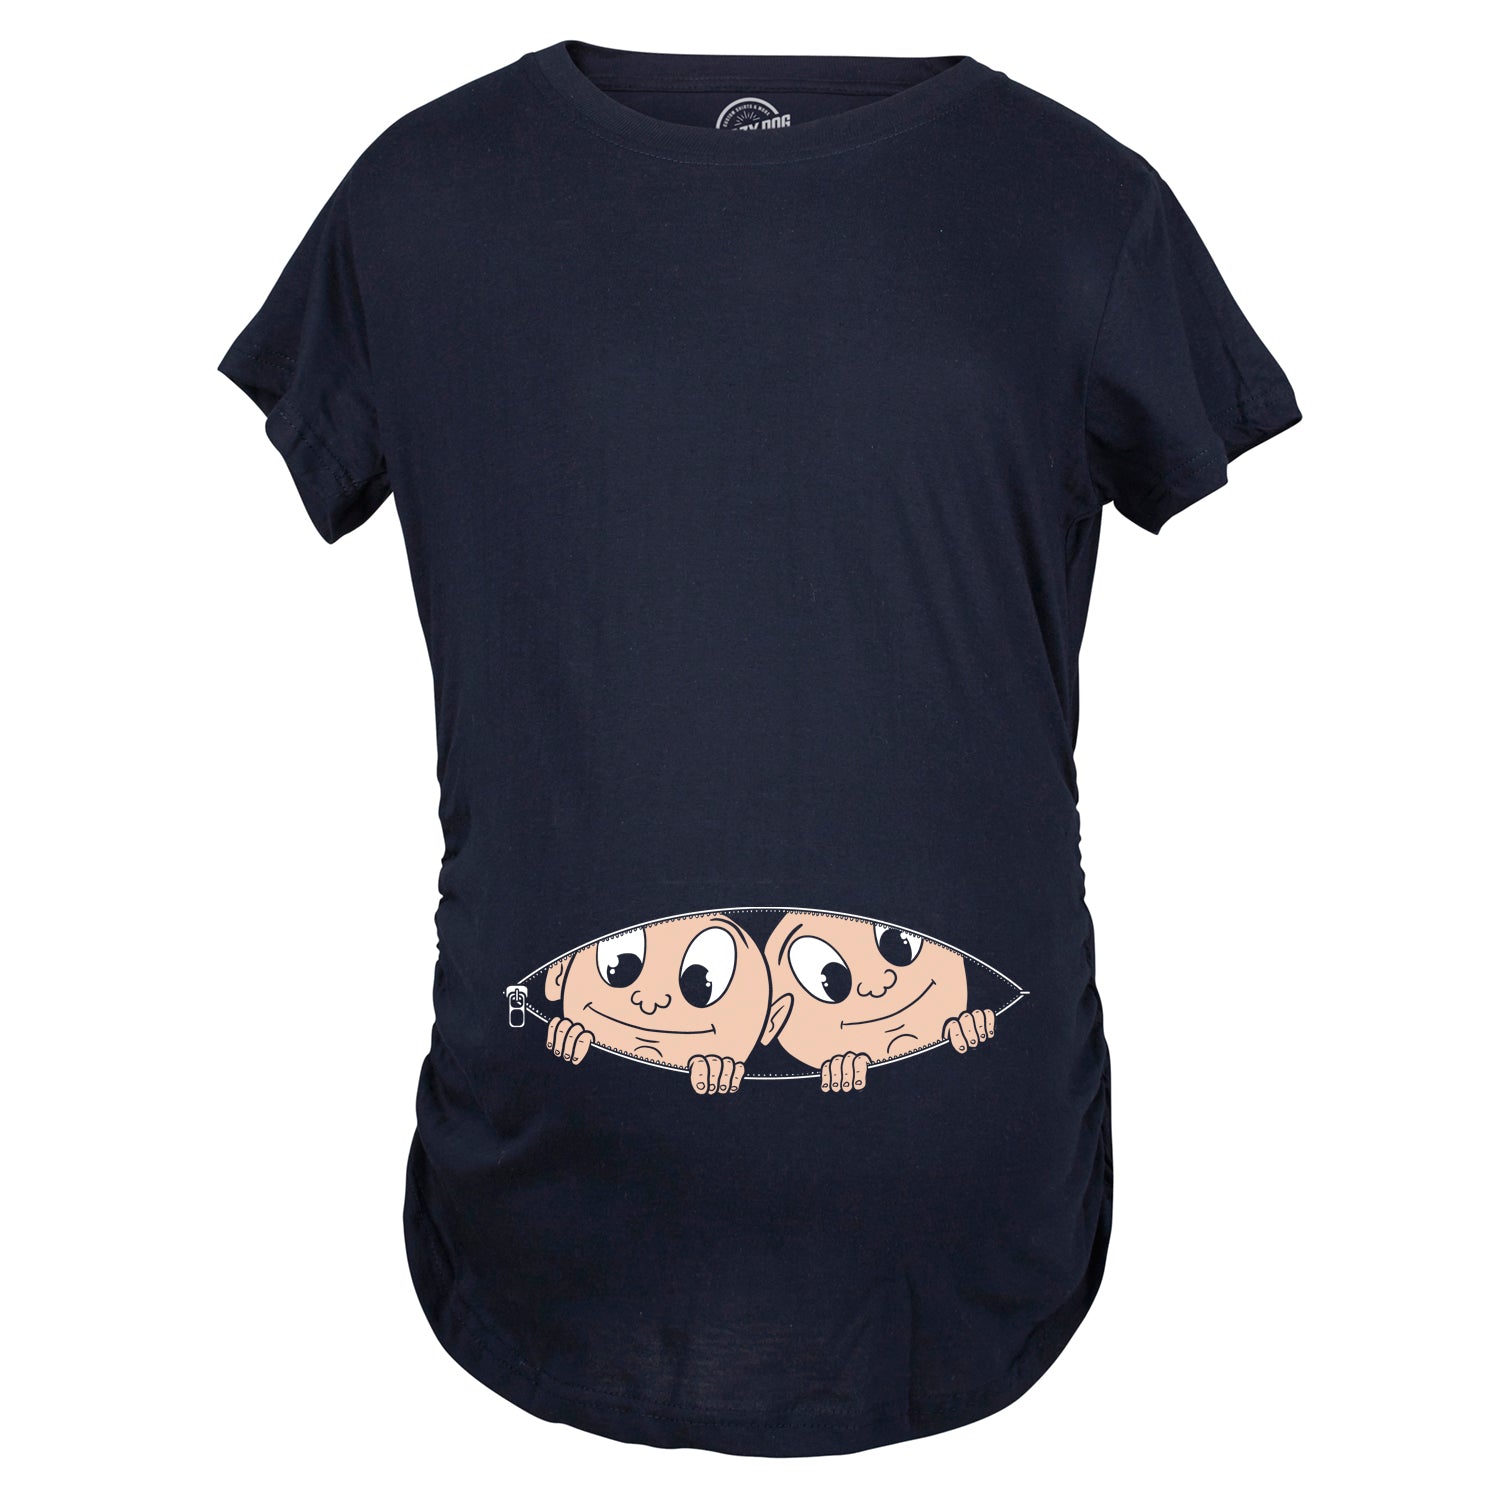 Funny Peeking Twins Maternity T Shirt Nerdy Peeking Tee